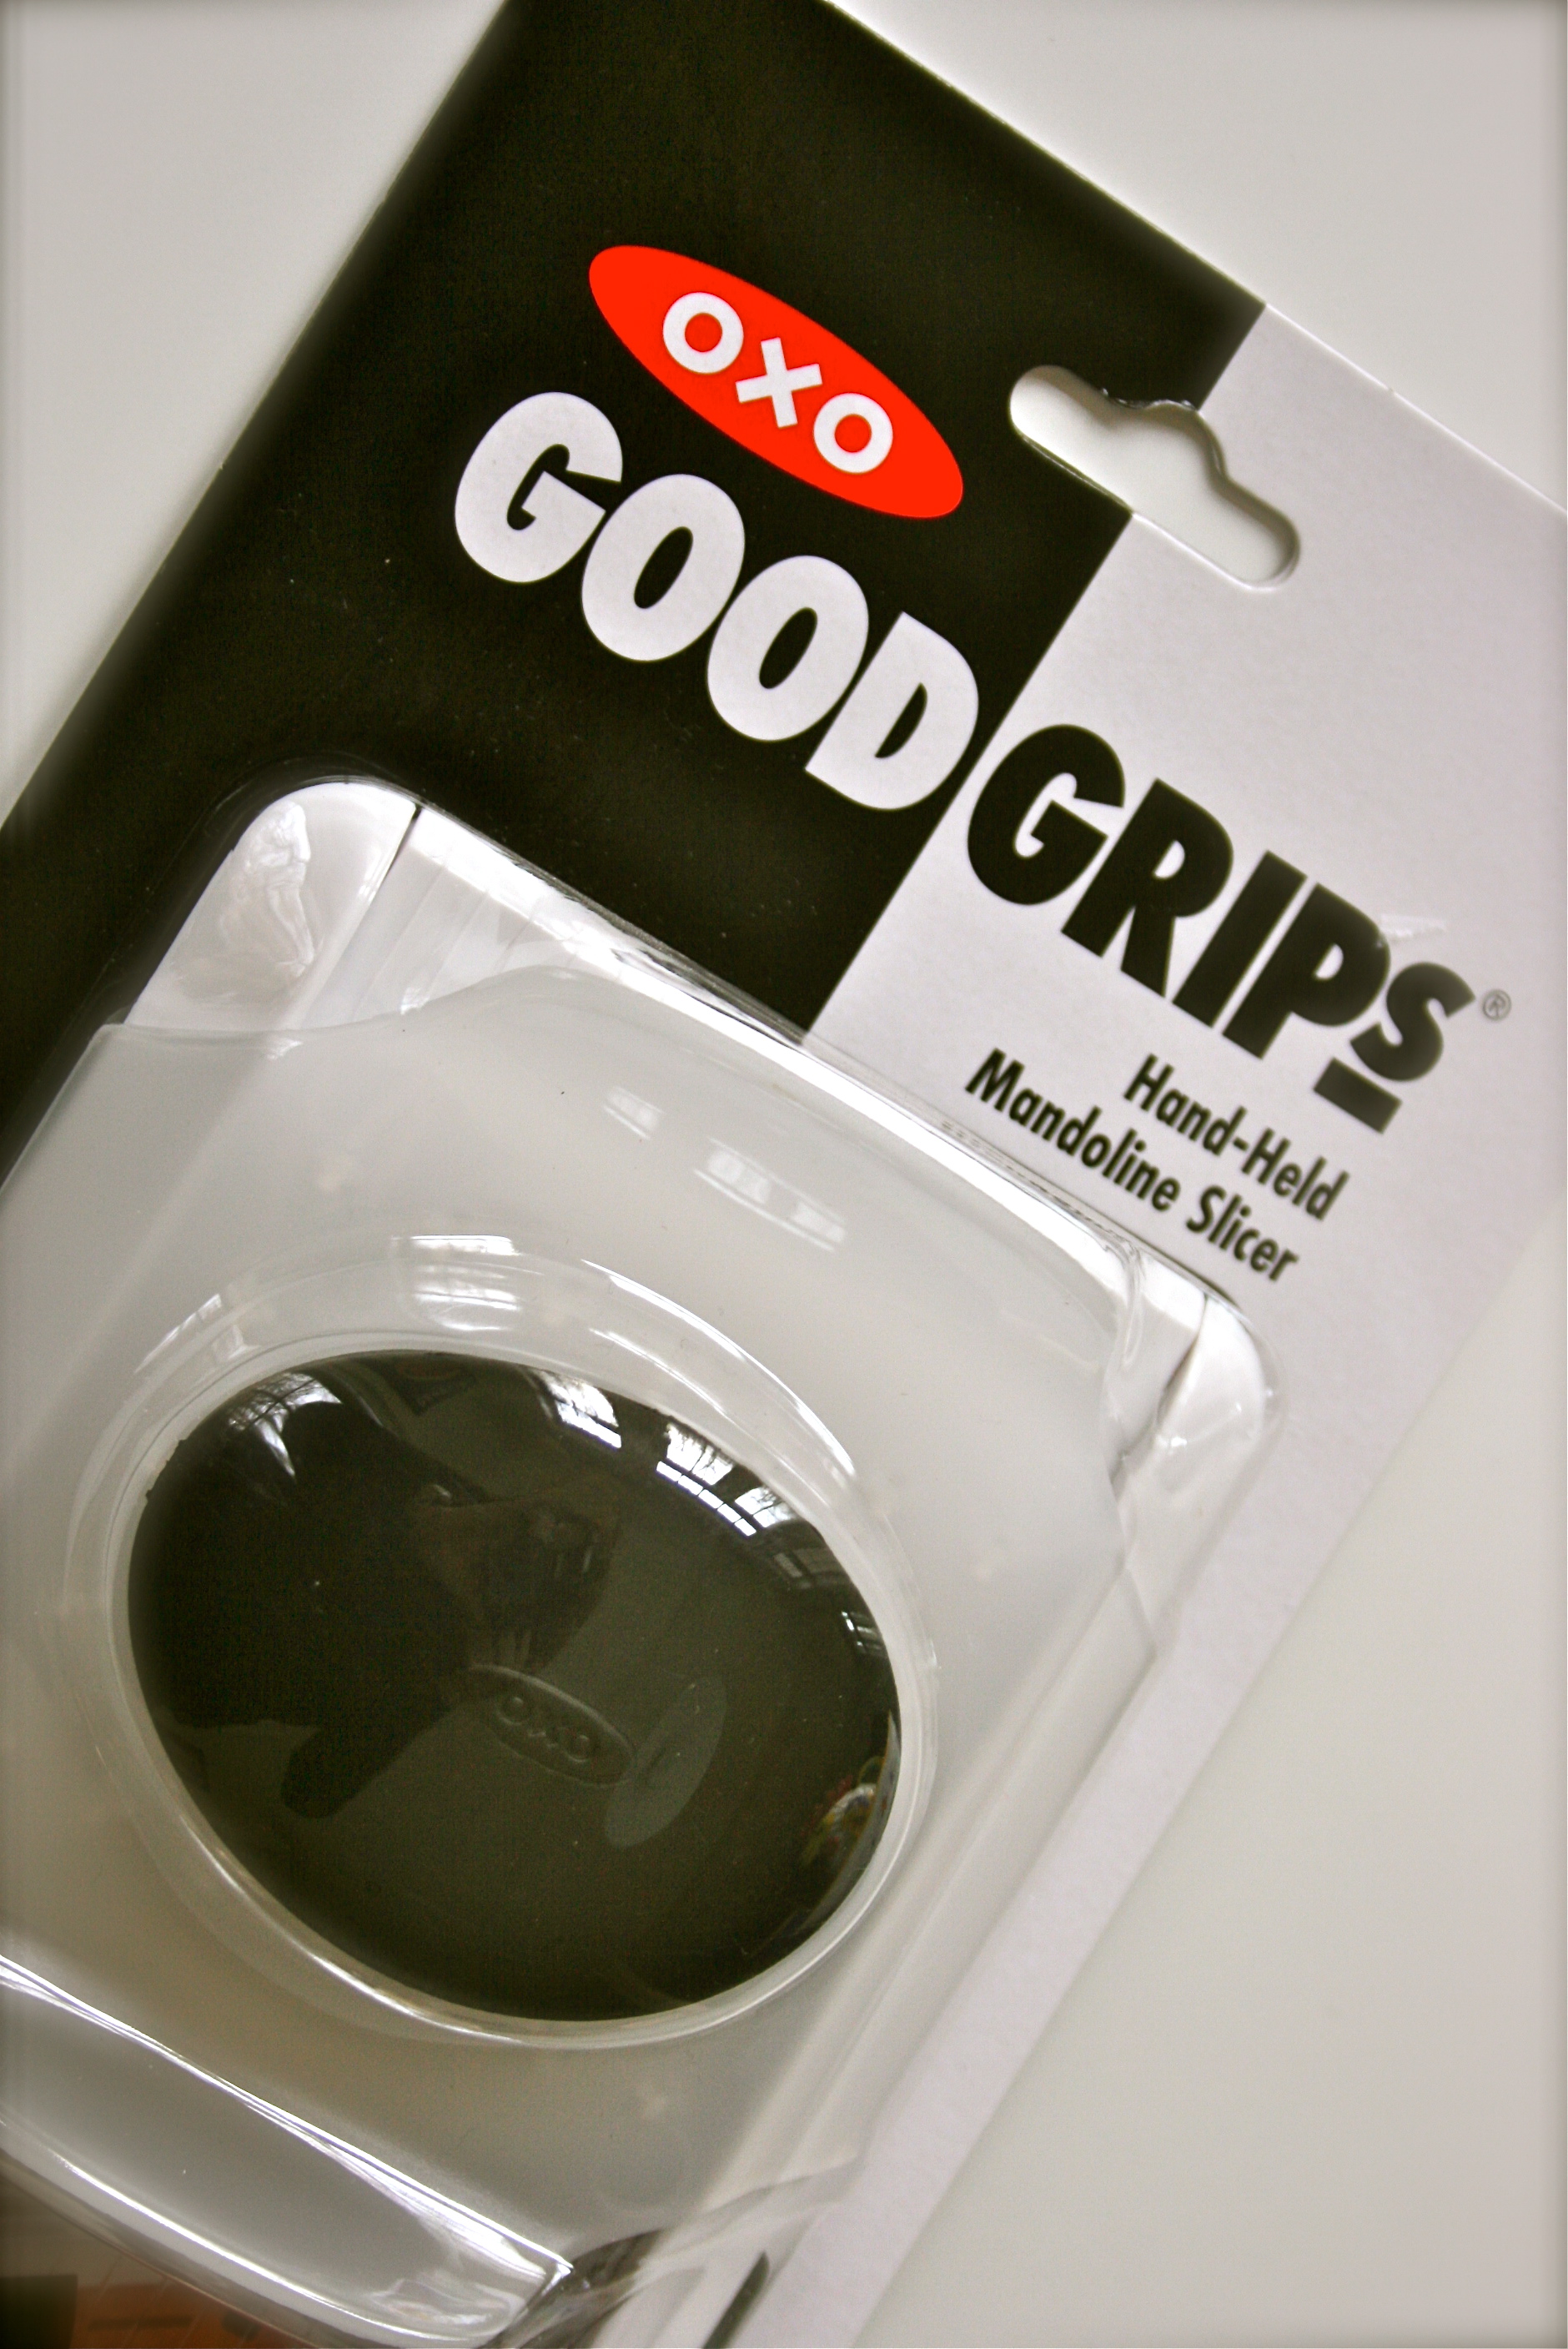 OXO Good Grips Hand-Held Mandoline Slicer